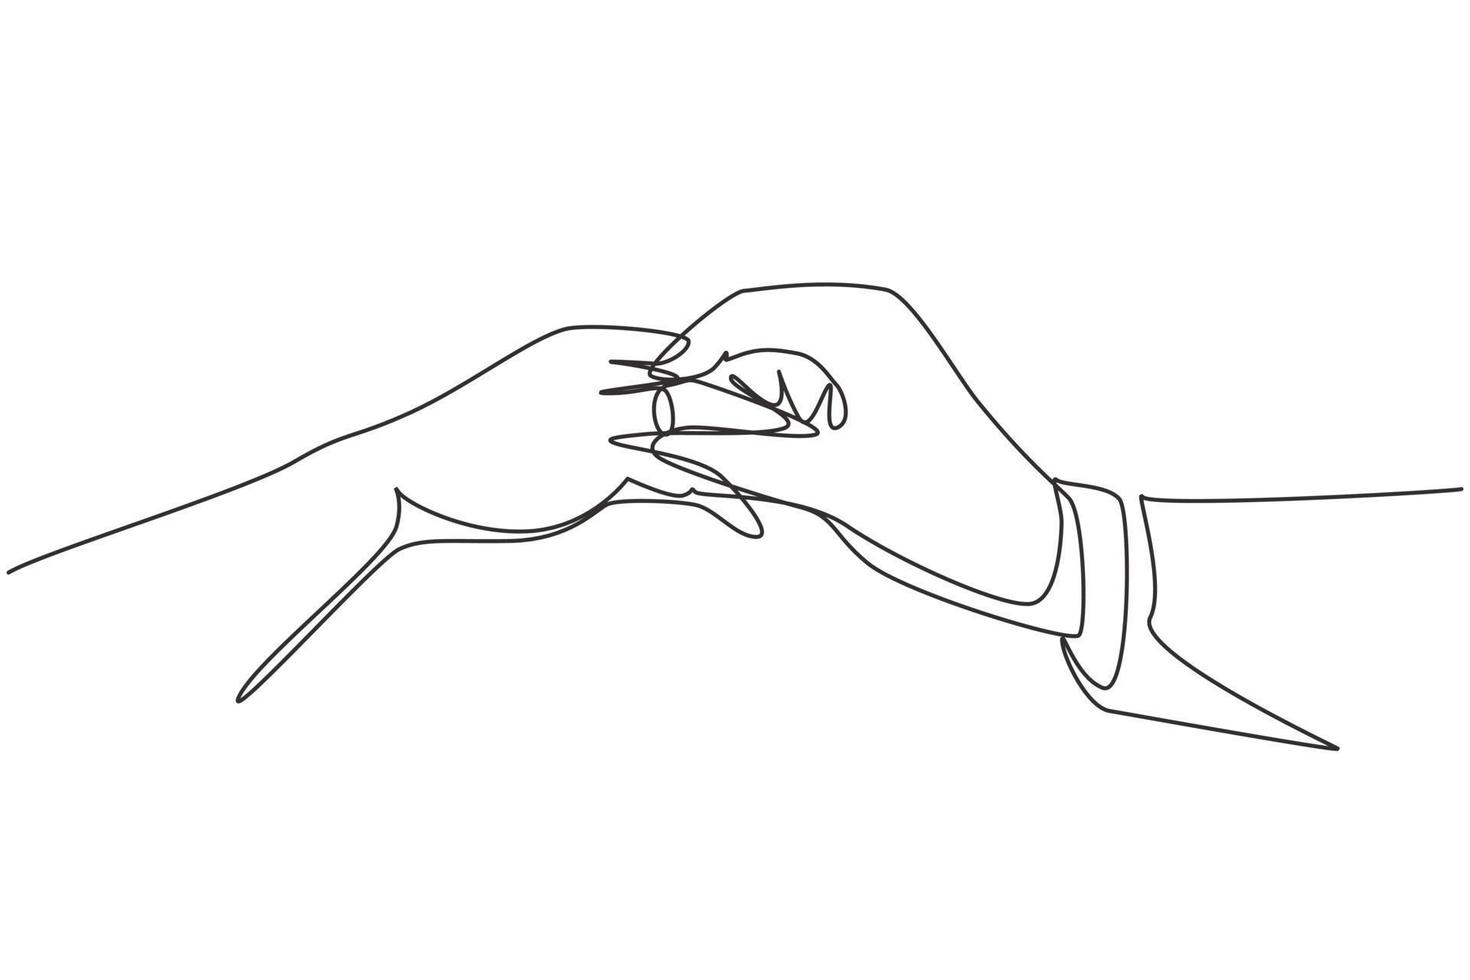 kontinuerlig en rad ritning brudgum sätta ring på brudens finger under bröllopsceremonin. brudparet avger lojalitetslöfte på sin bröllopsdag. enda rad rita design vektorgrafisk illustration vektor